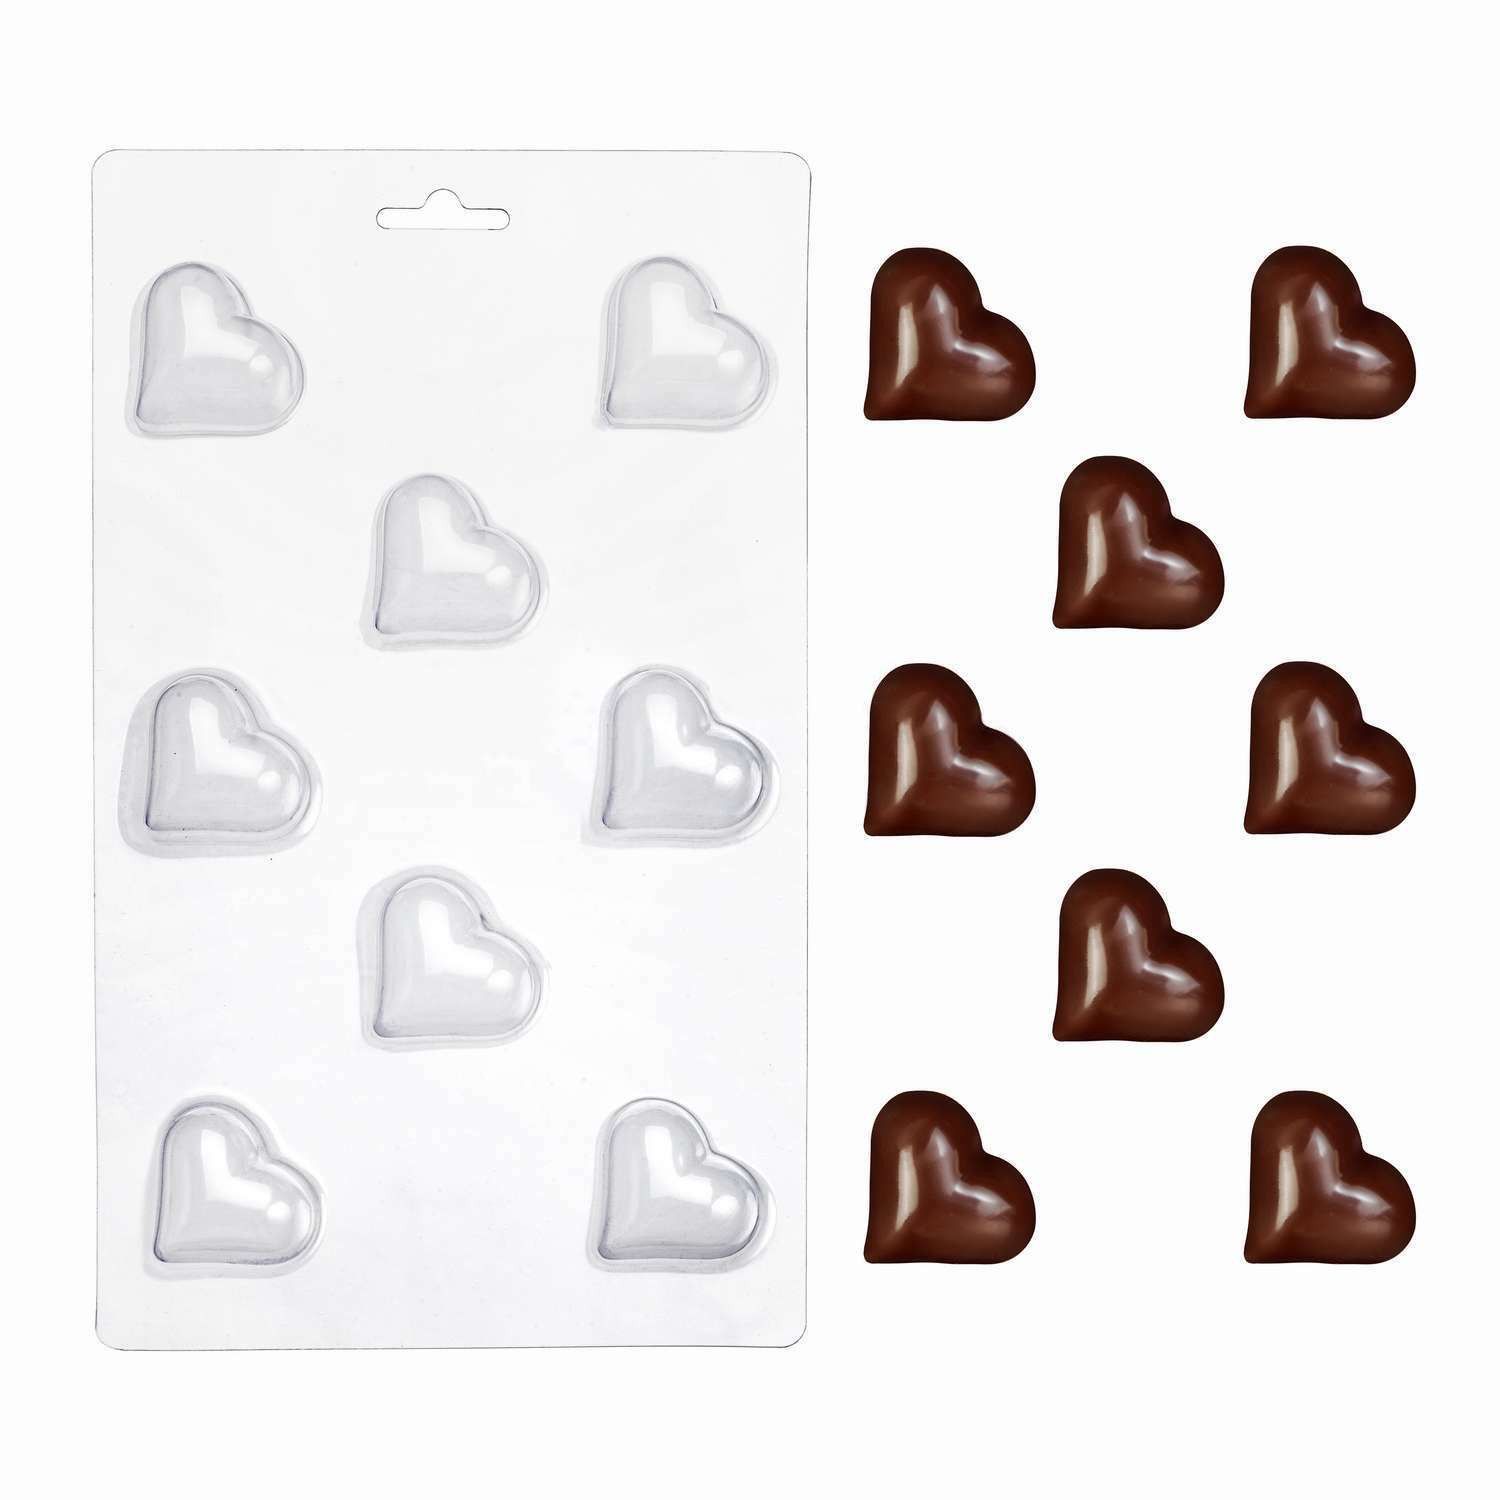 ⋗ Пластиковая форма для шоколада Конфета Сердце купить в Украине ➛ CakeShop.com.ua, фото